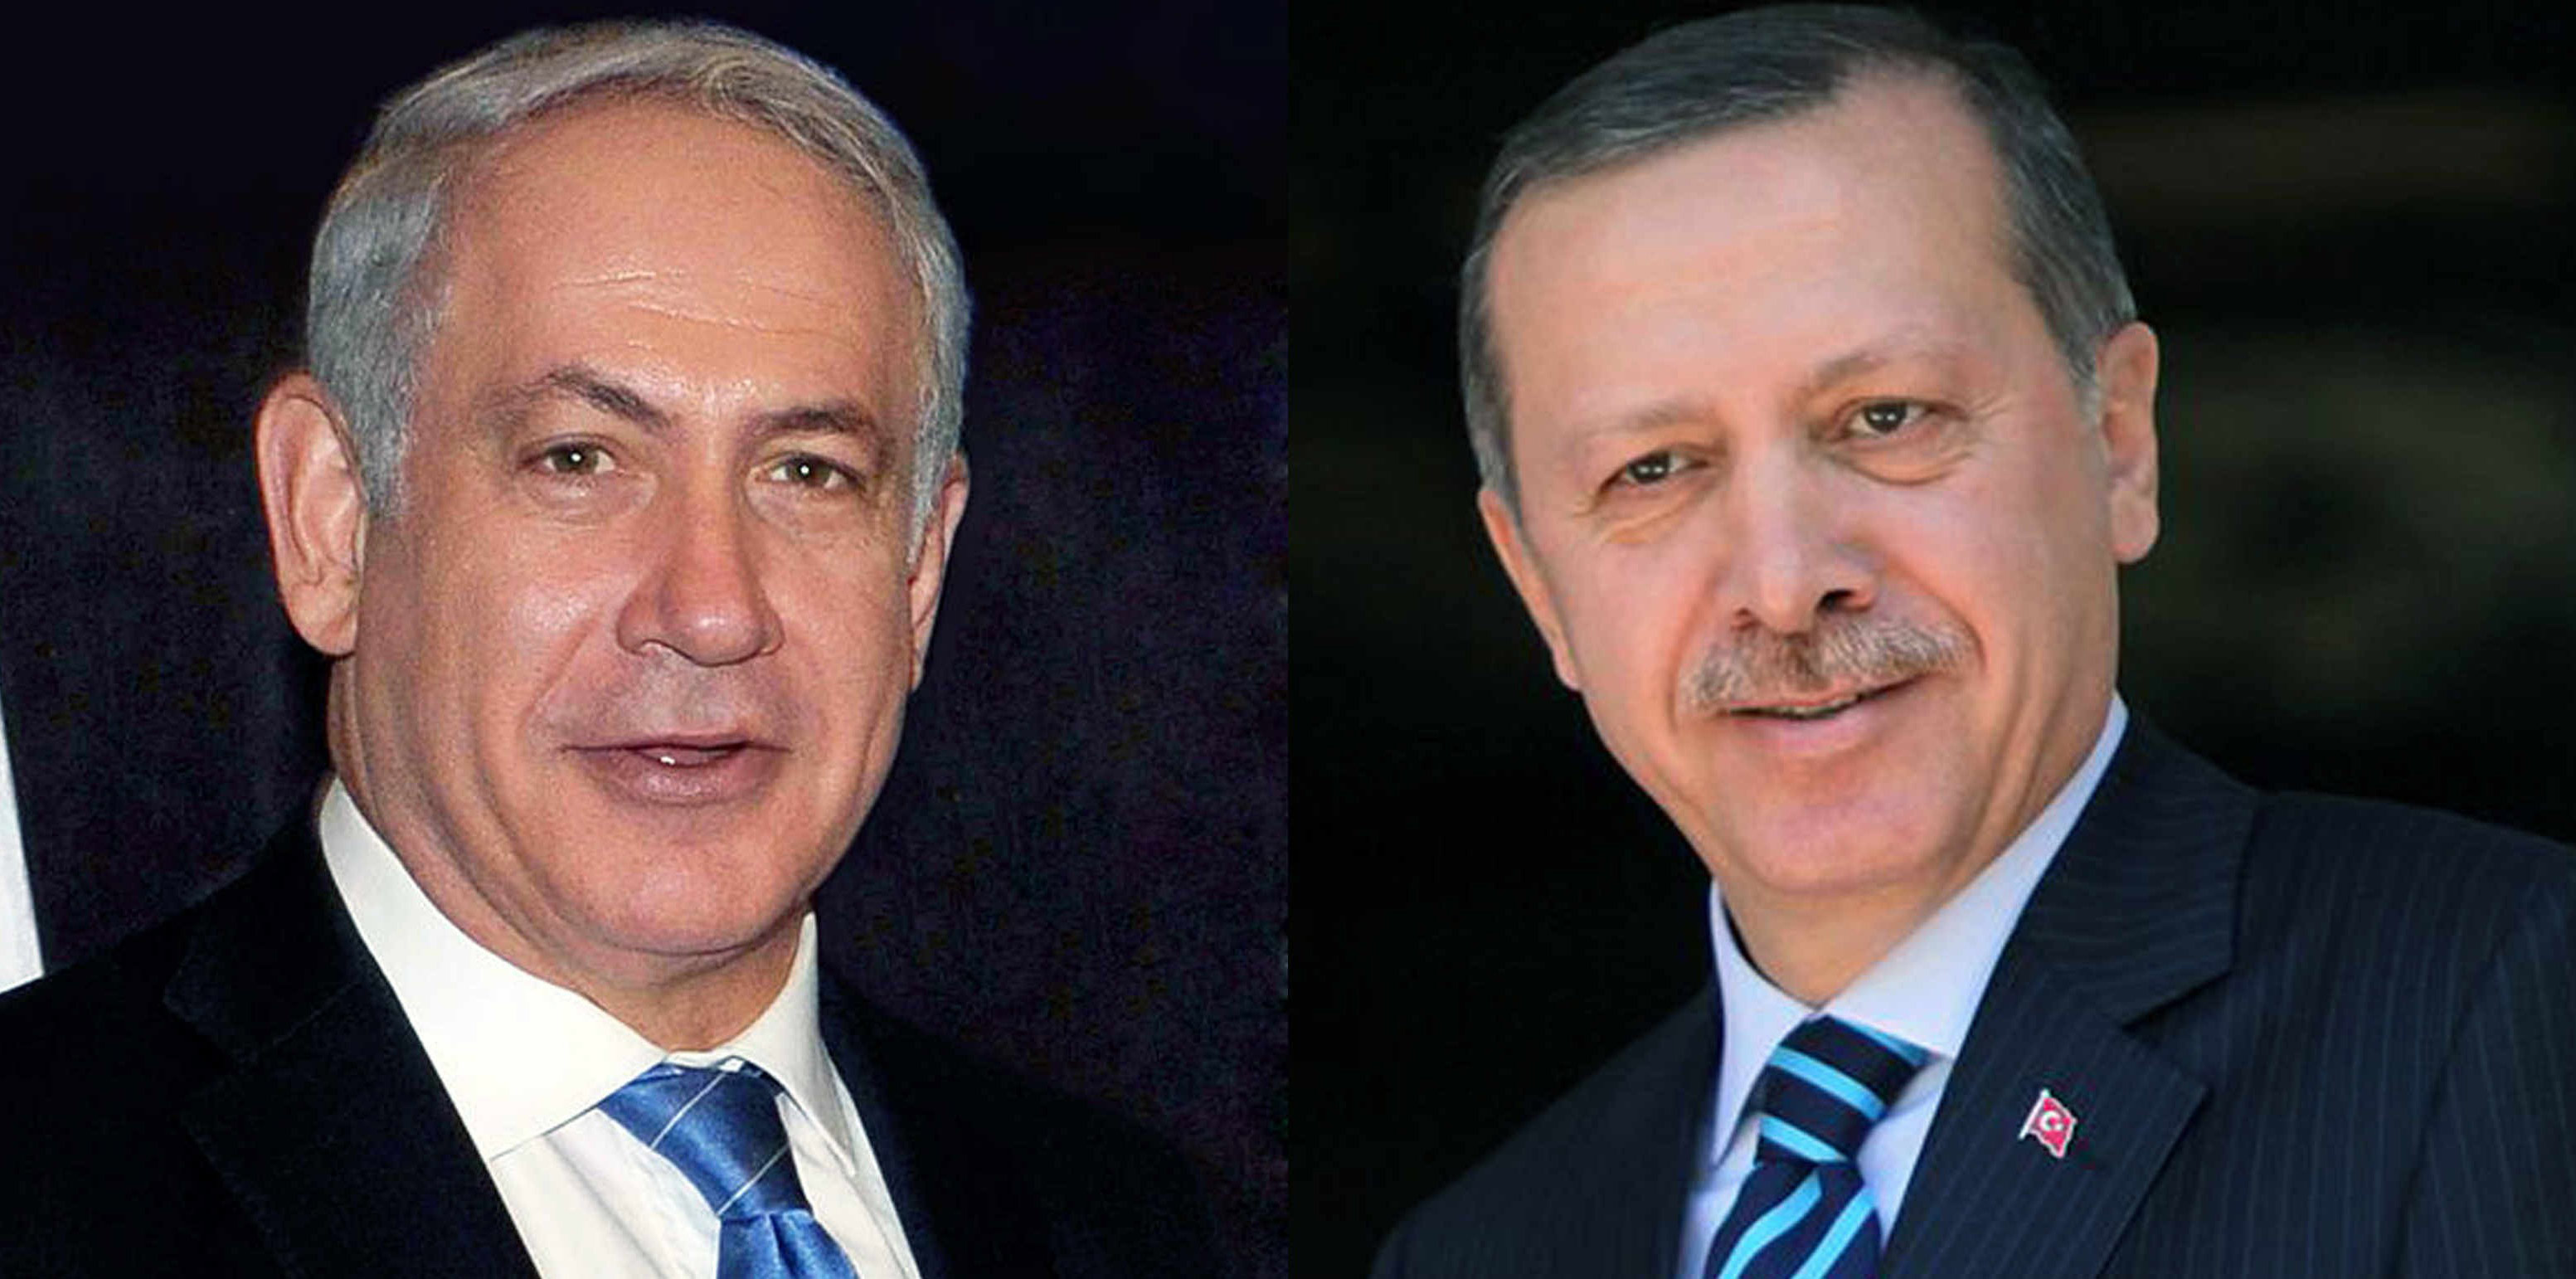 اردوغان يرد على نتنياهو :أنت طرقت الباب الخطأ